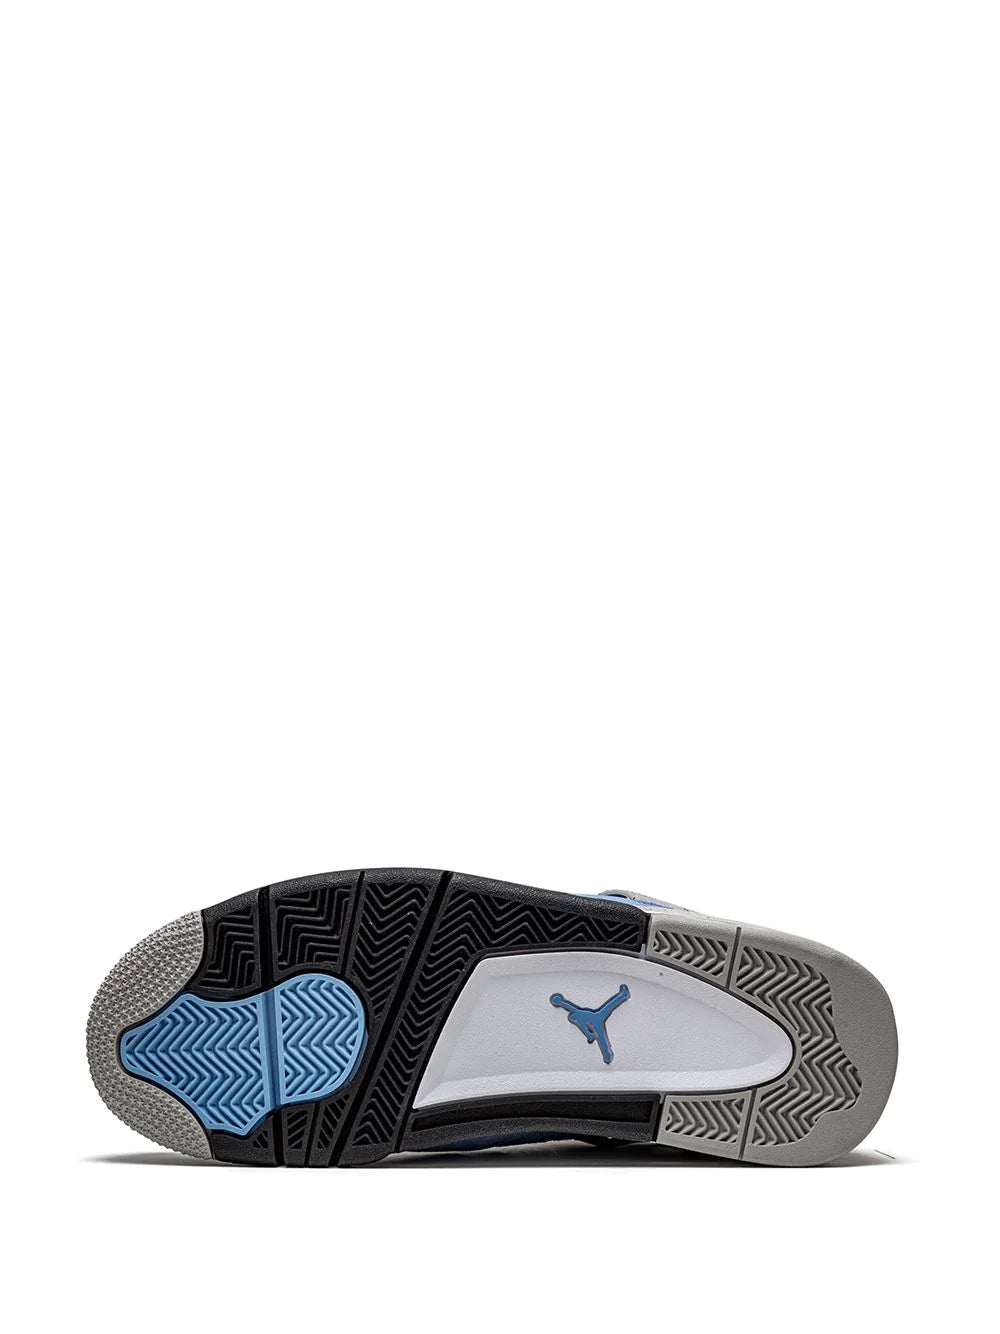 Air Jordan retro 4 University blue